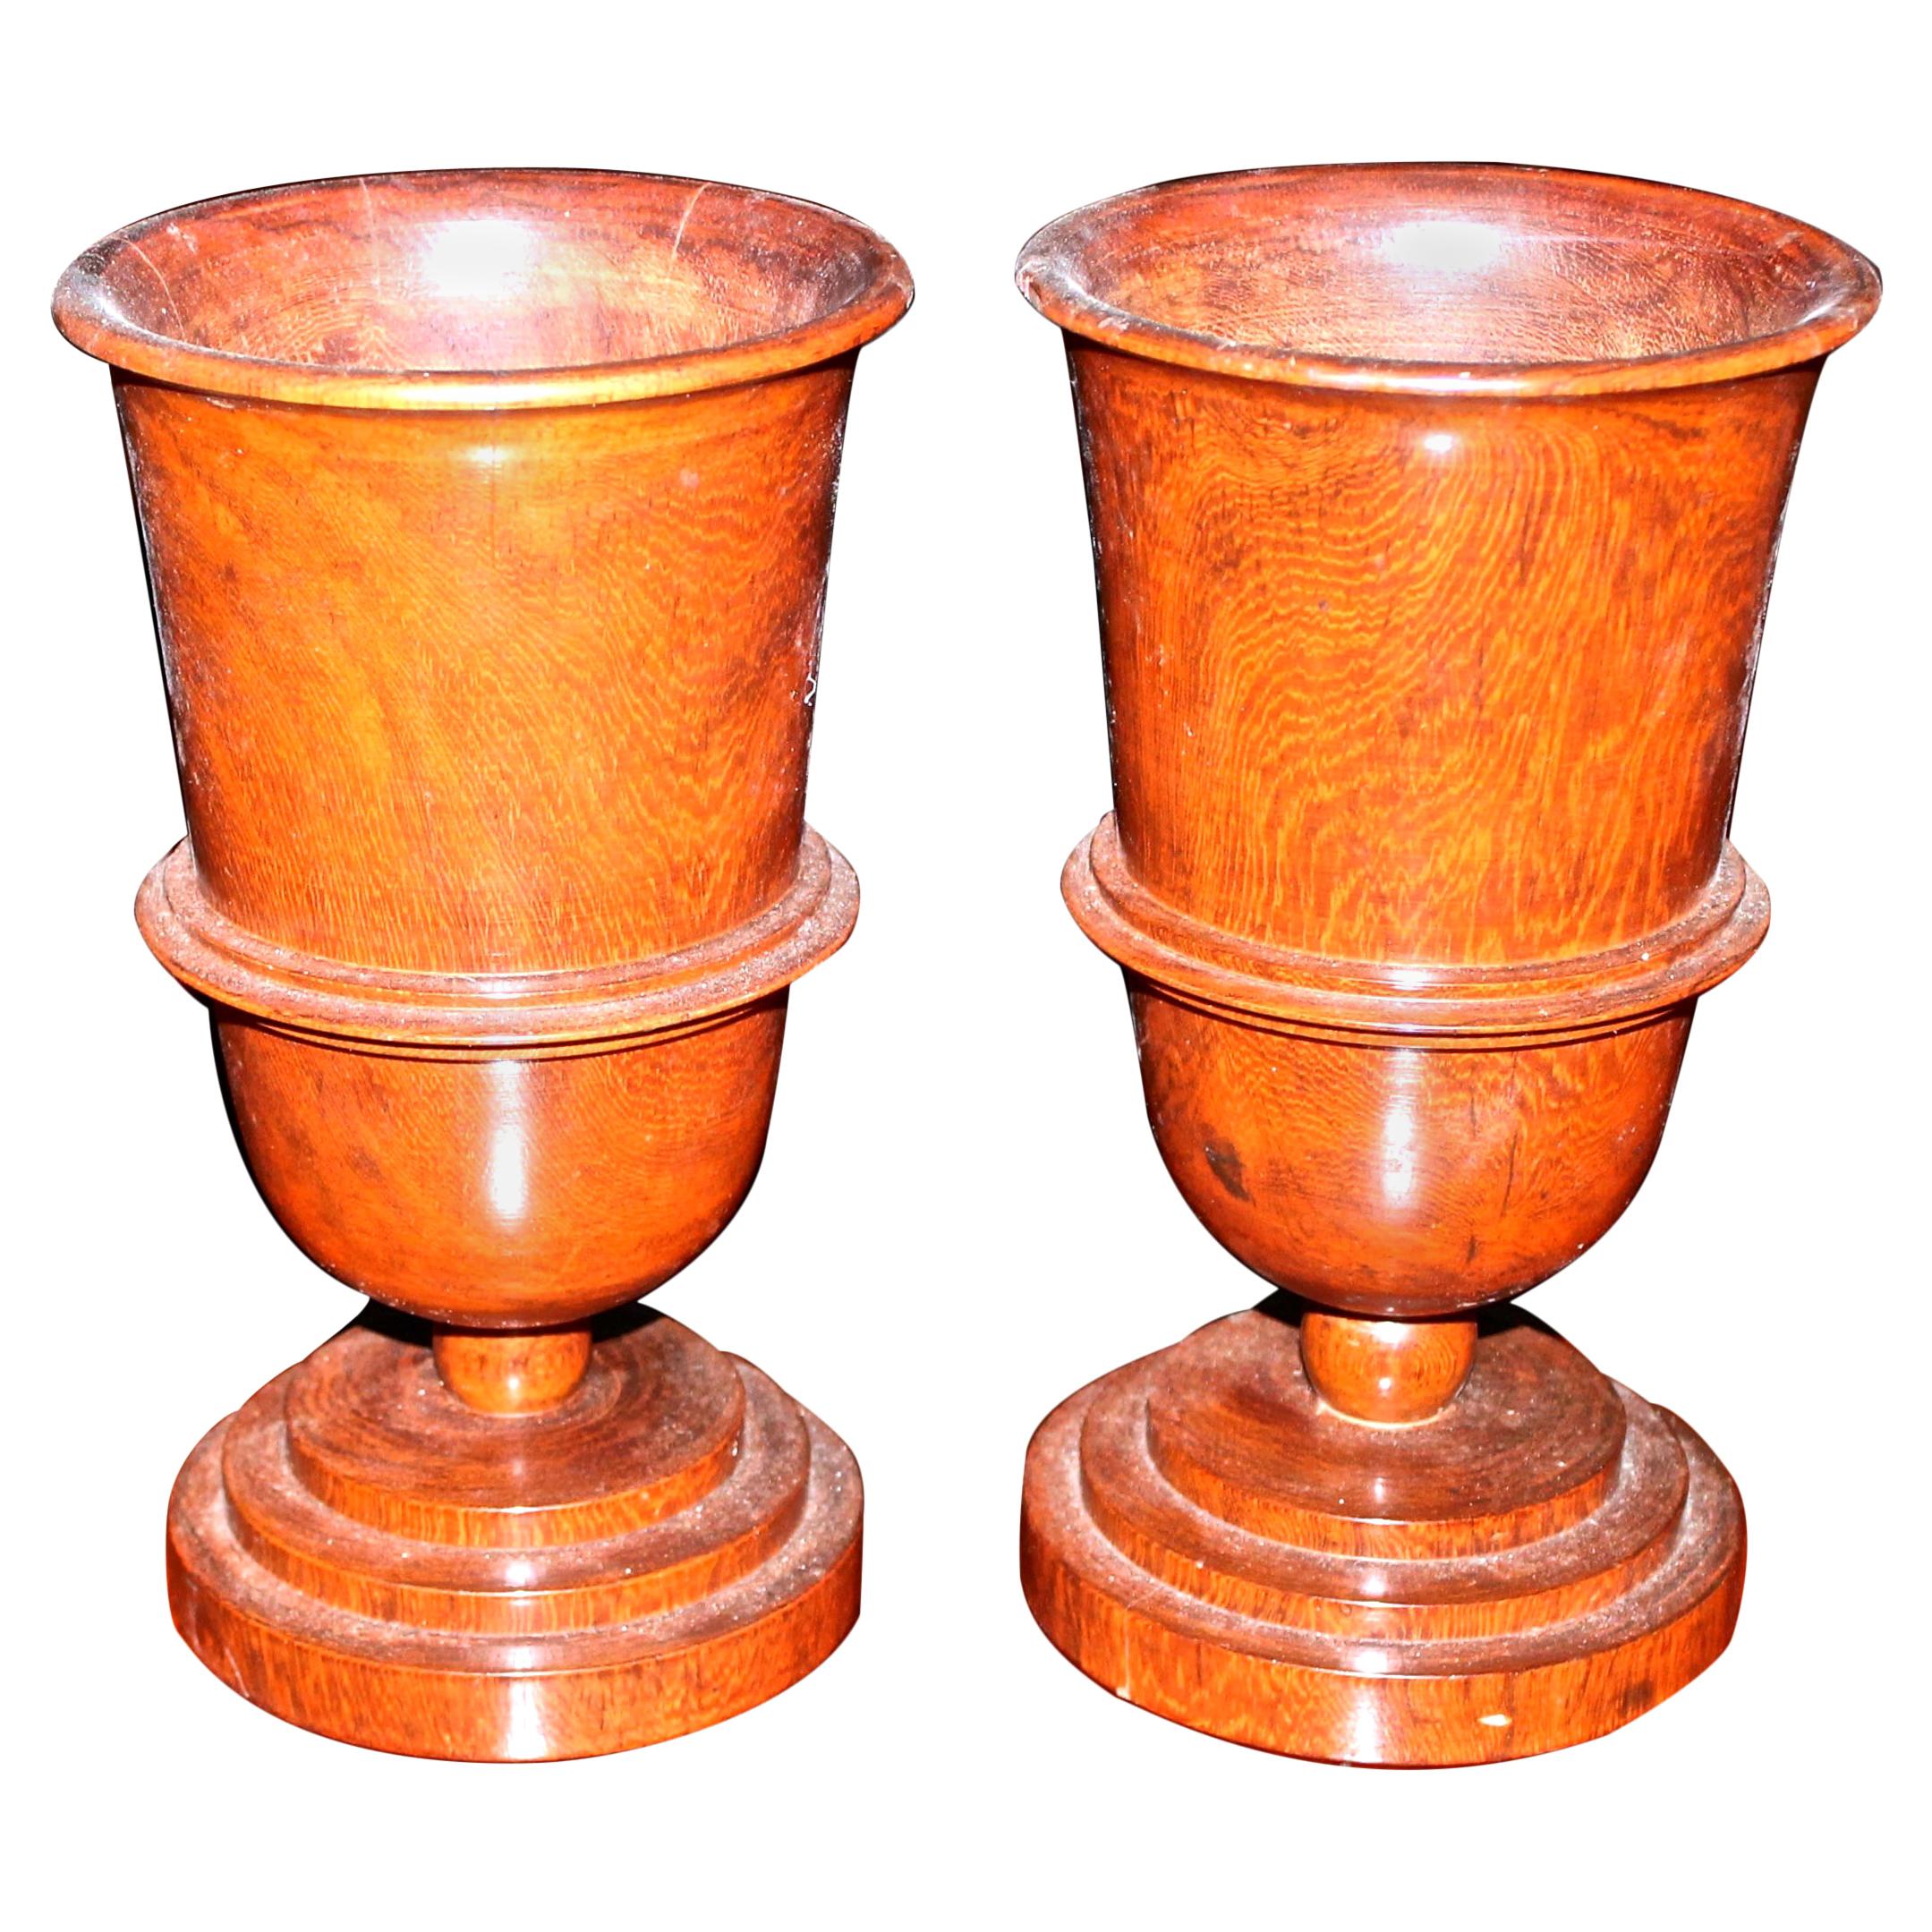 Pair of German Art Deco Treen Ware Urns